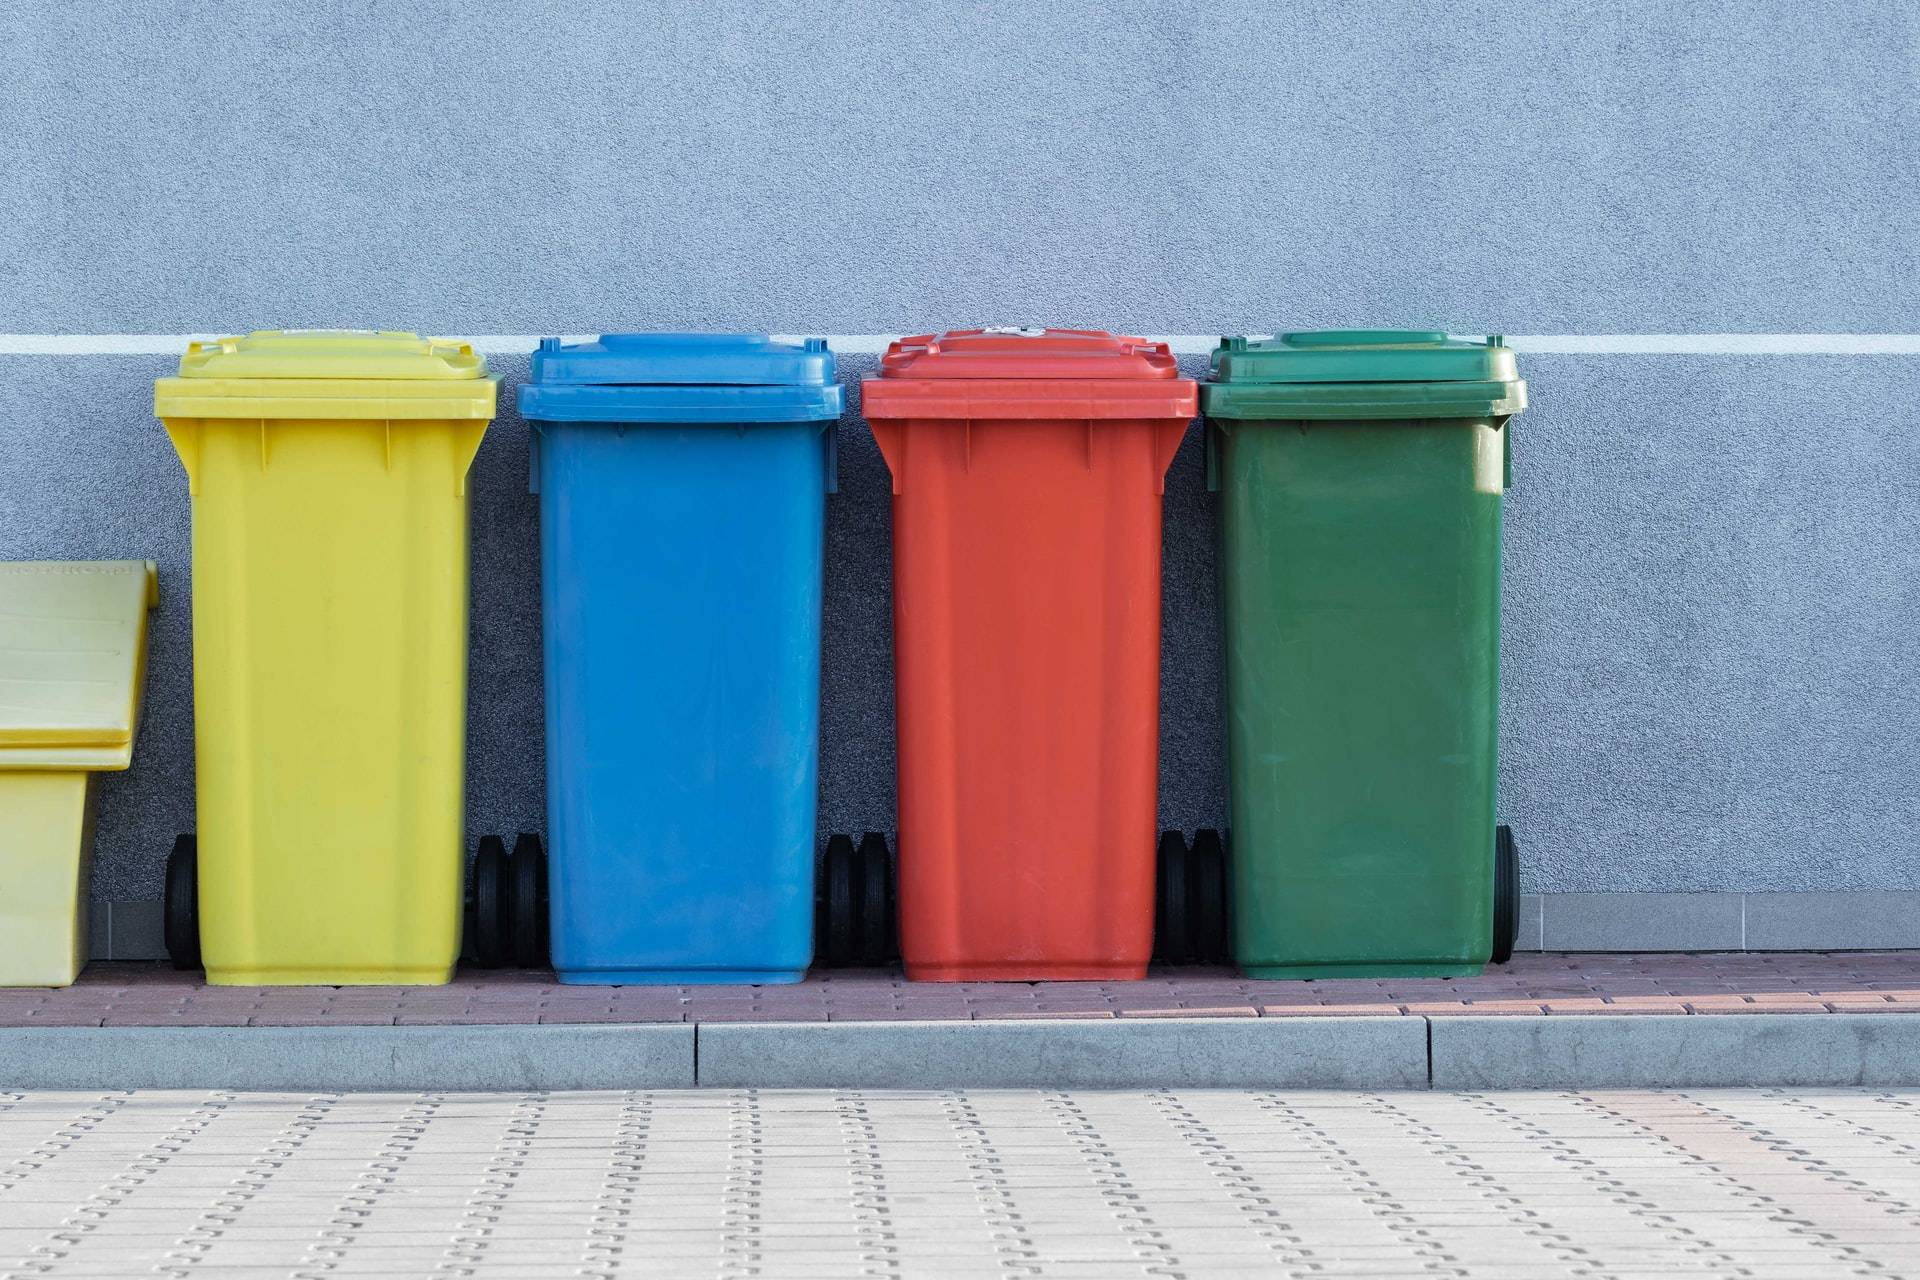 pawel czerwinski RkIsyD AVvc unsplash - Questa azienda vuole riciclare tutti i tuoi “rifiuti di vita”